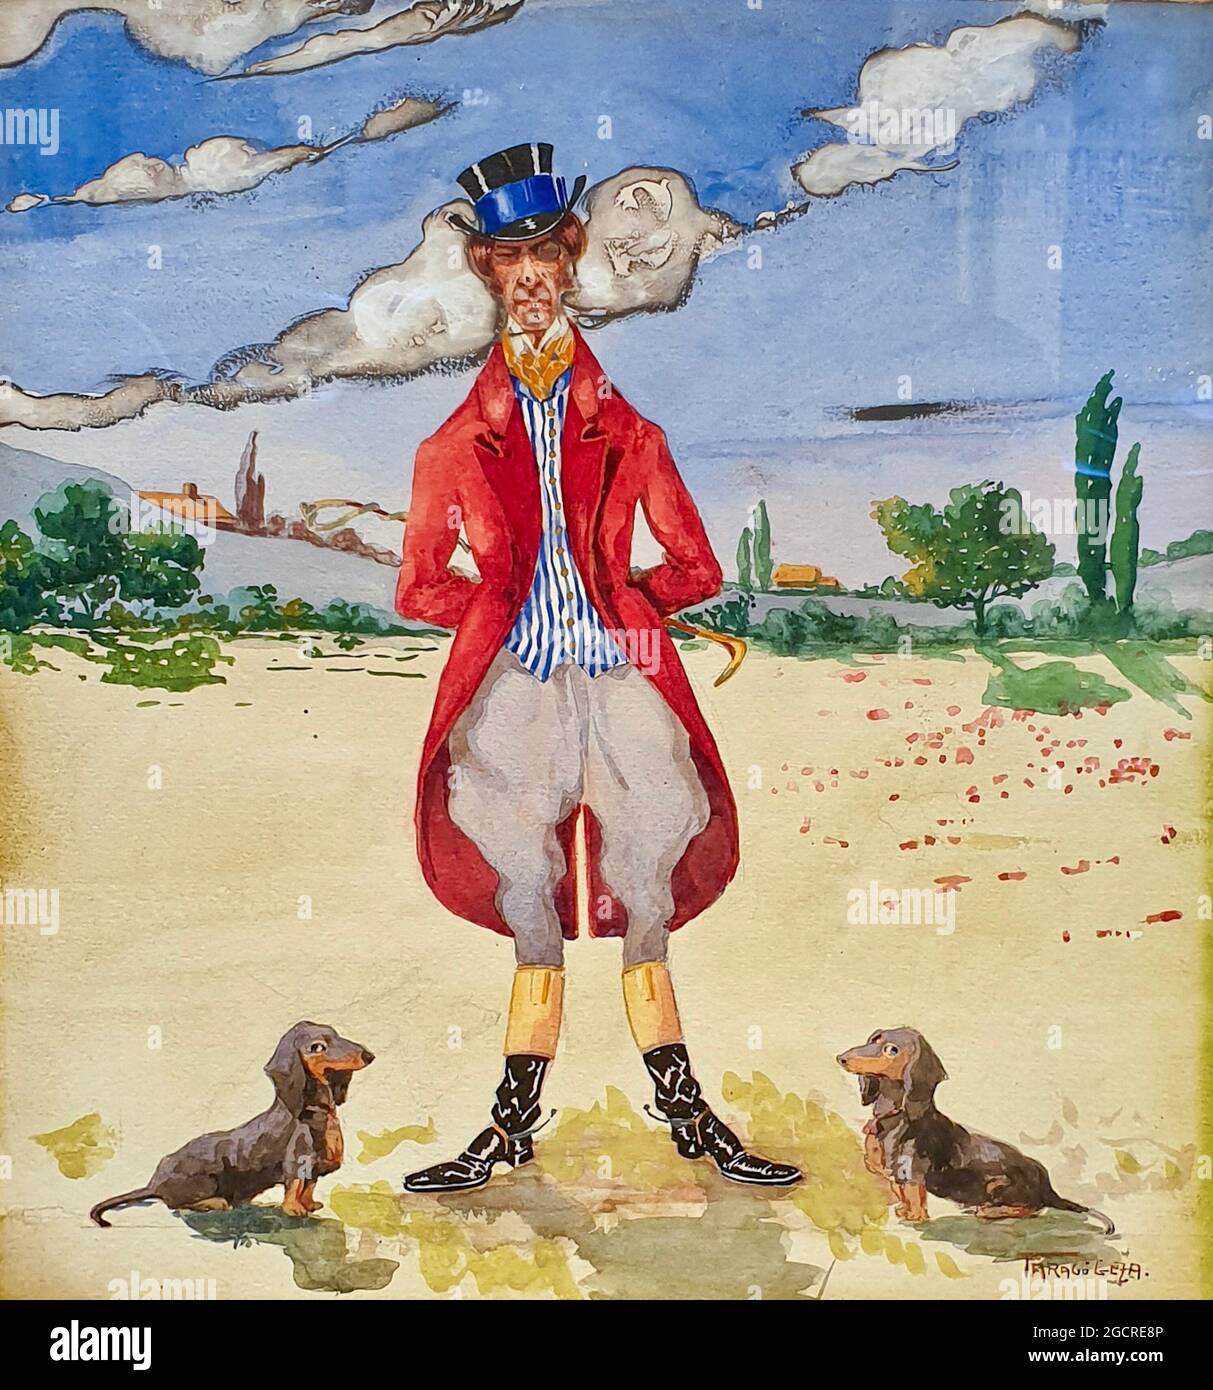 Géza Faragó opera dal titolo Peacemaker. Un gentleman in cappotto rosso si erge come pacemaker apparentemente tra due dachshunds aka cani salsiccia. Foto Stock